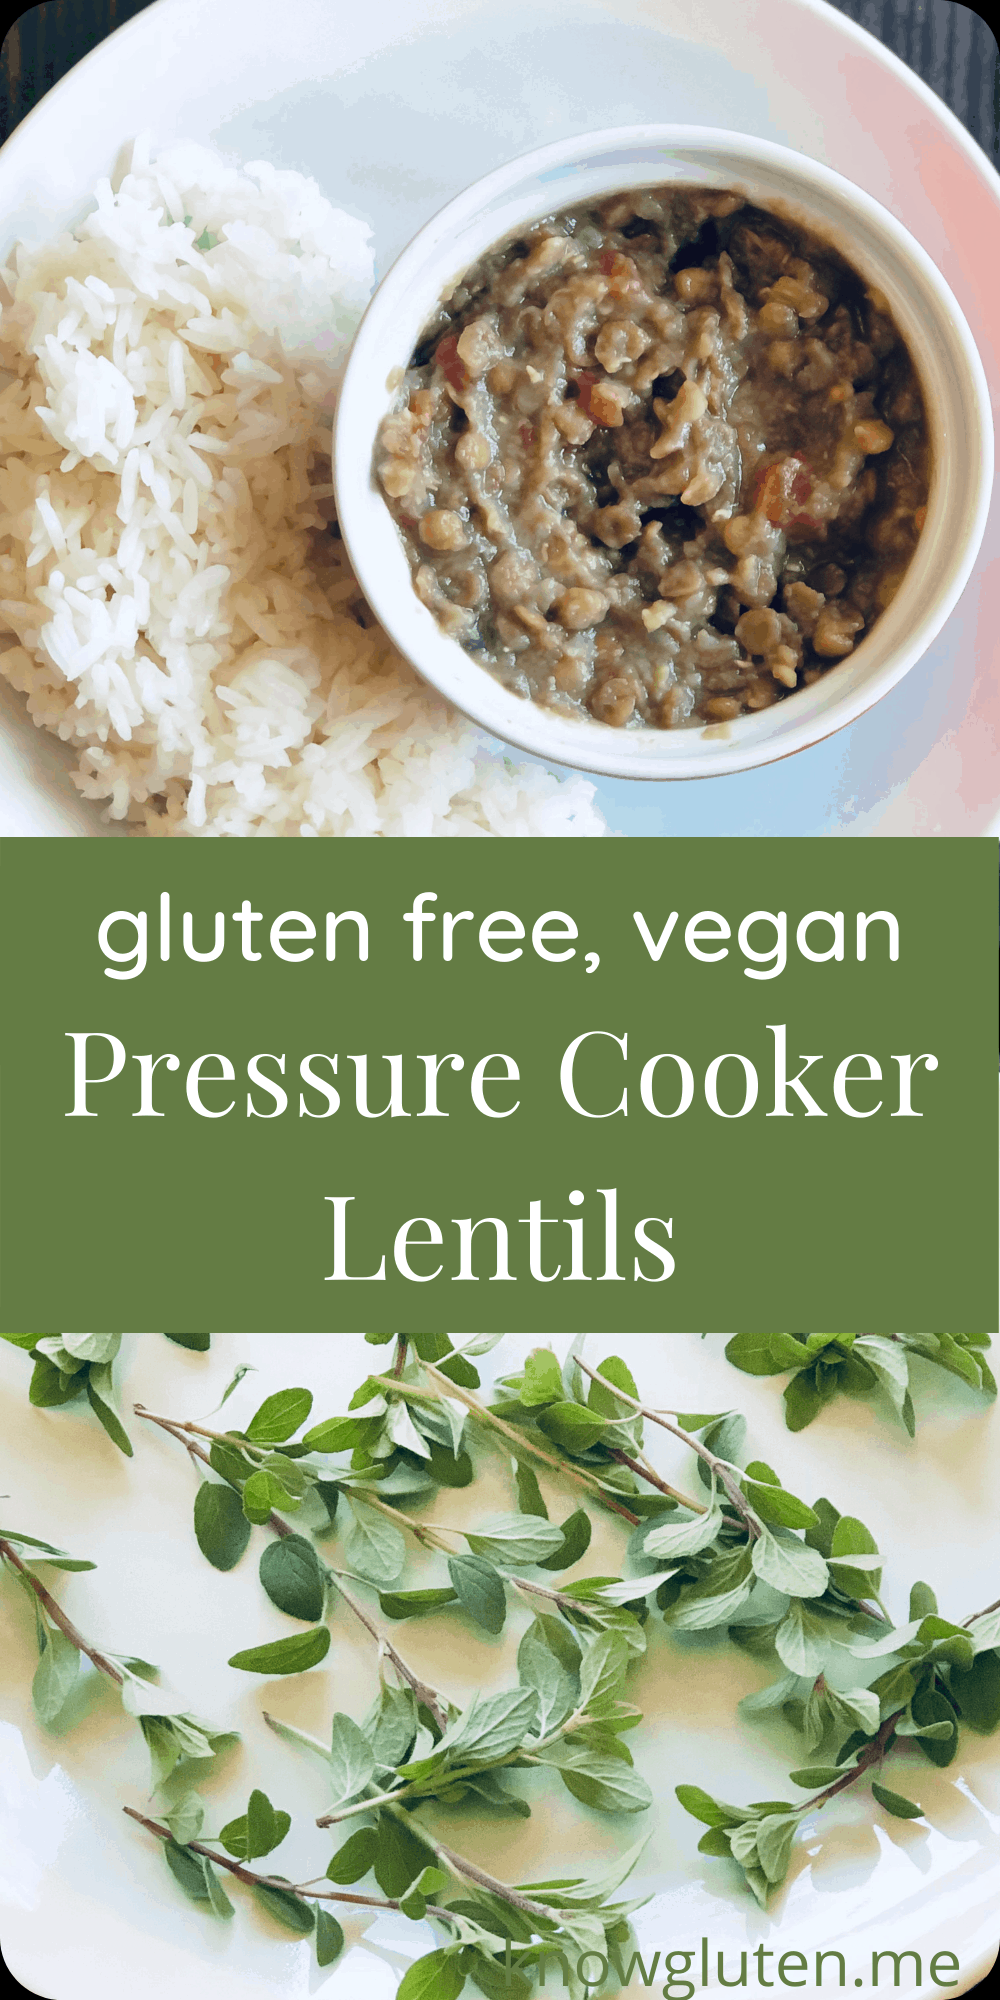 Creamy Lentils in a Pressure Cooker - Gluten Free, Vegan